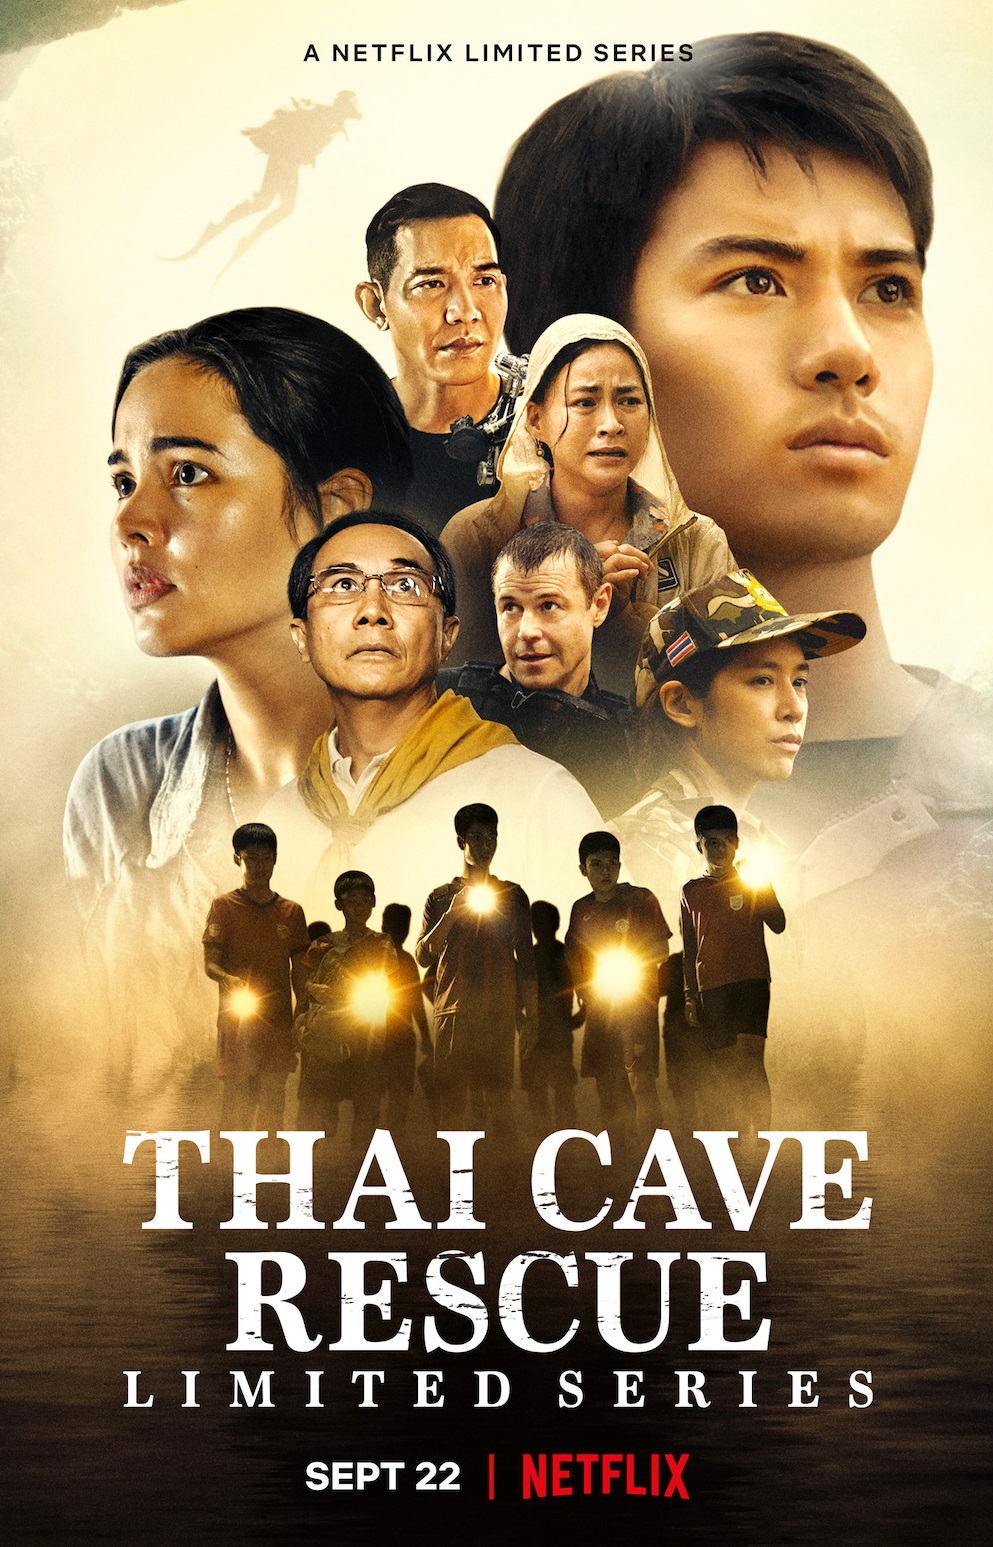 Thai Cave Rescue 2022